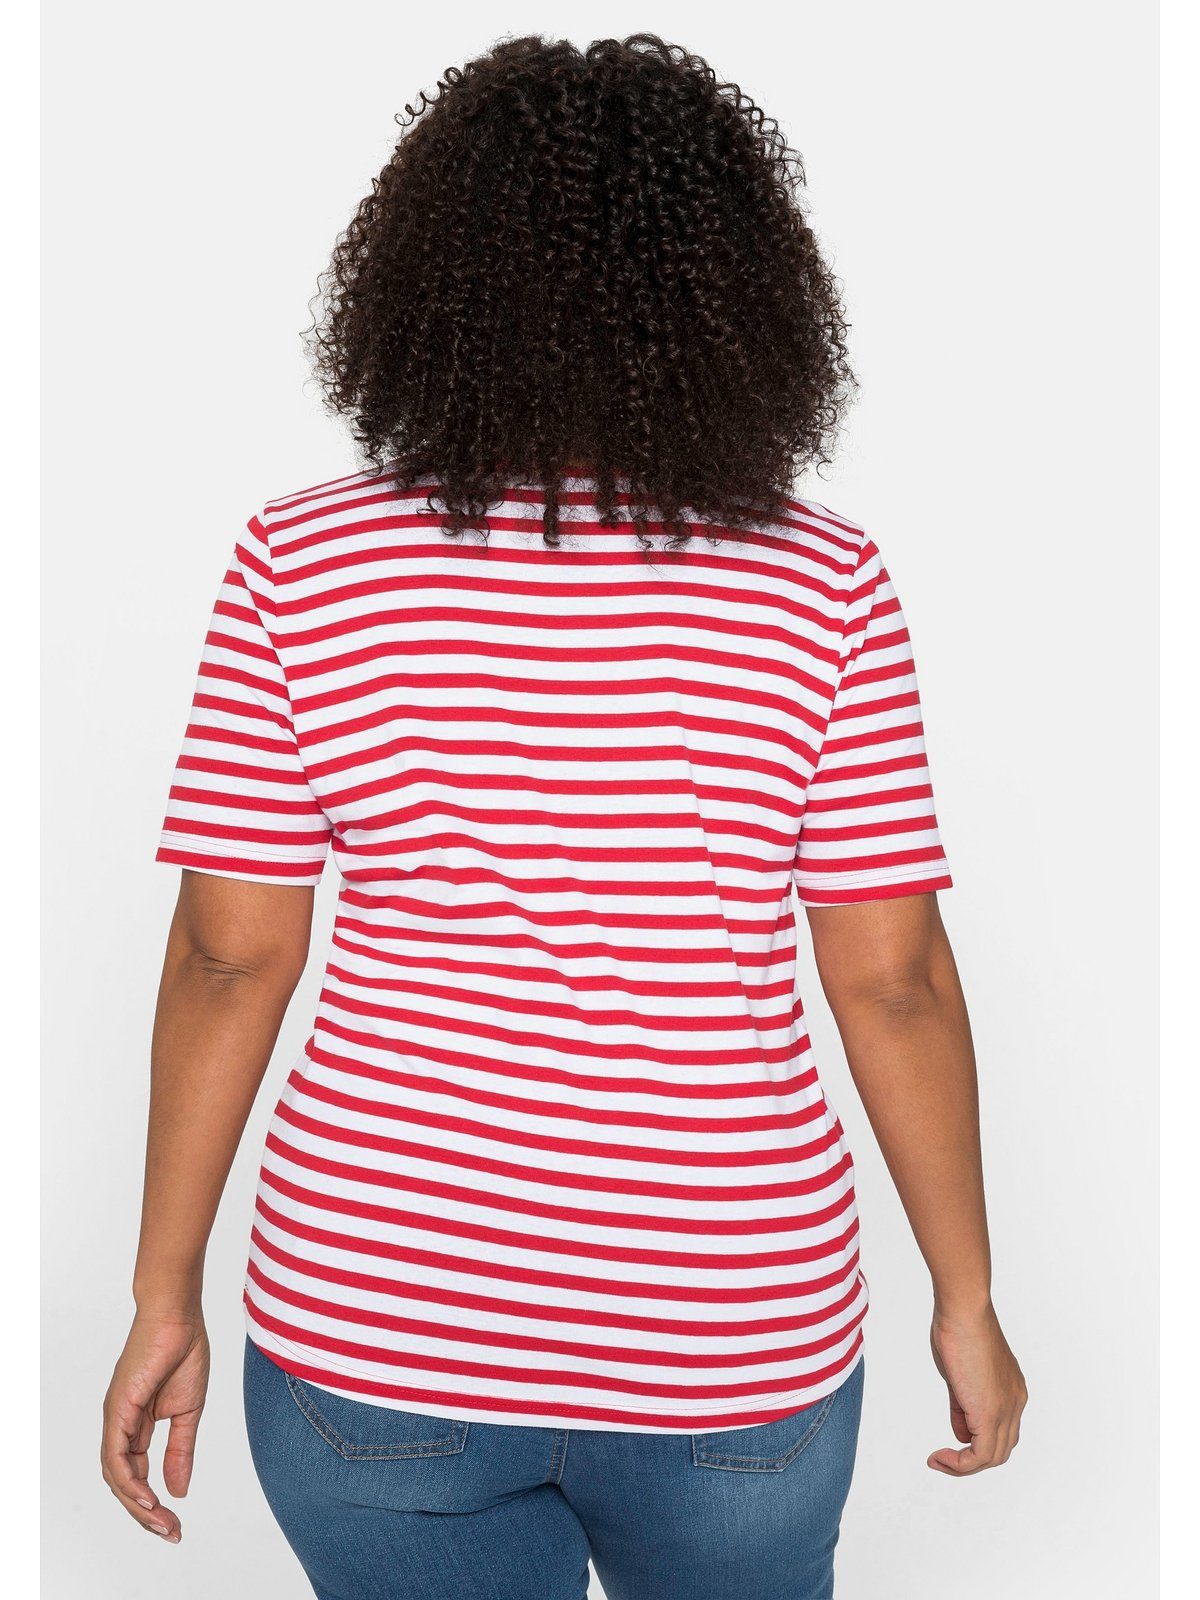 Sheego T-Shirt Große Größen mit Rippware aus garngefärbtem mohnrot-weiß Ringel